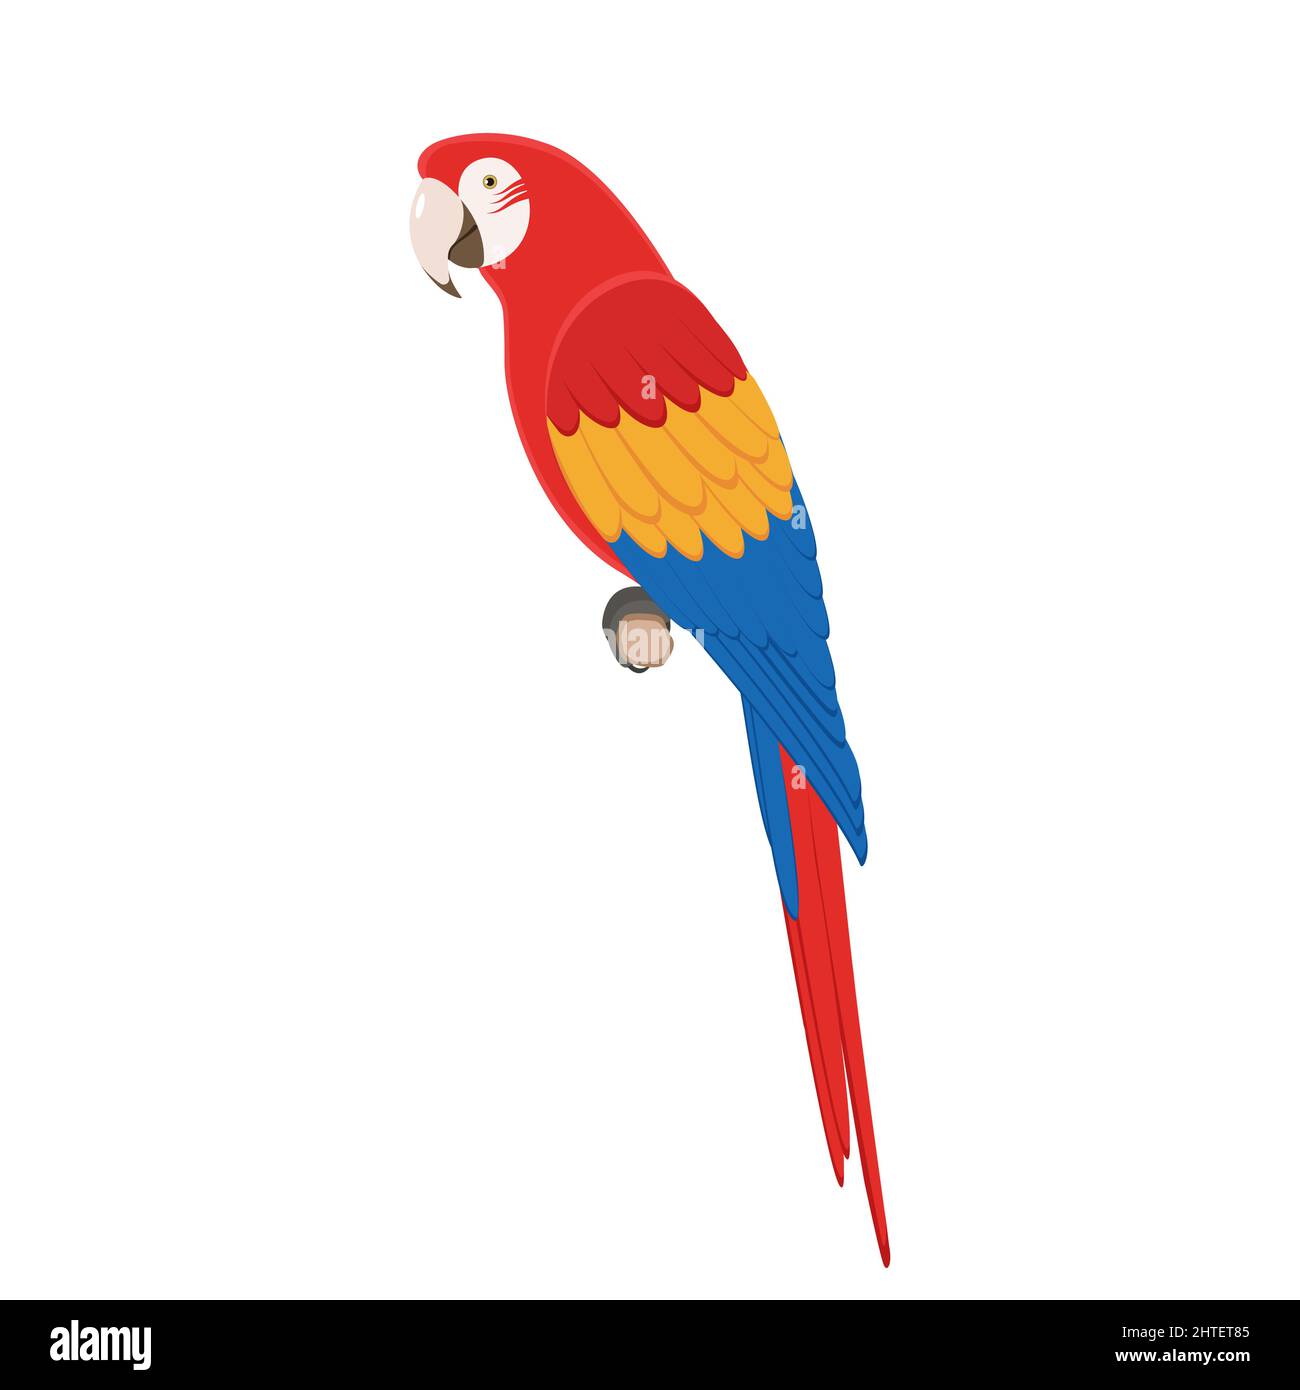 Pappagallo di Macaw seduto su un ramo. Illustrazione vettoriale di un pappagallo tropicale colorato di macaw seduto su un ramo isolato su uno sfondo bianco. Vie laterali Illustrazione Vettoriale